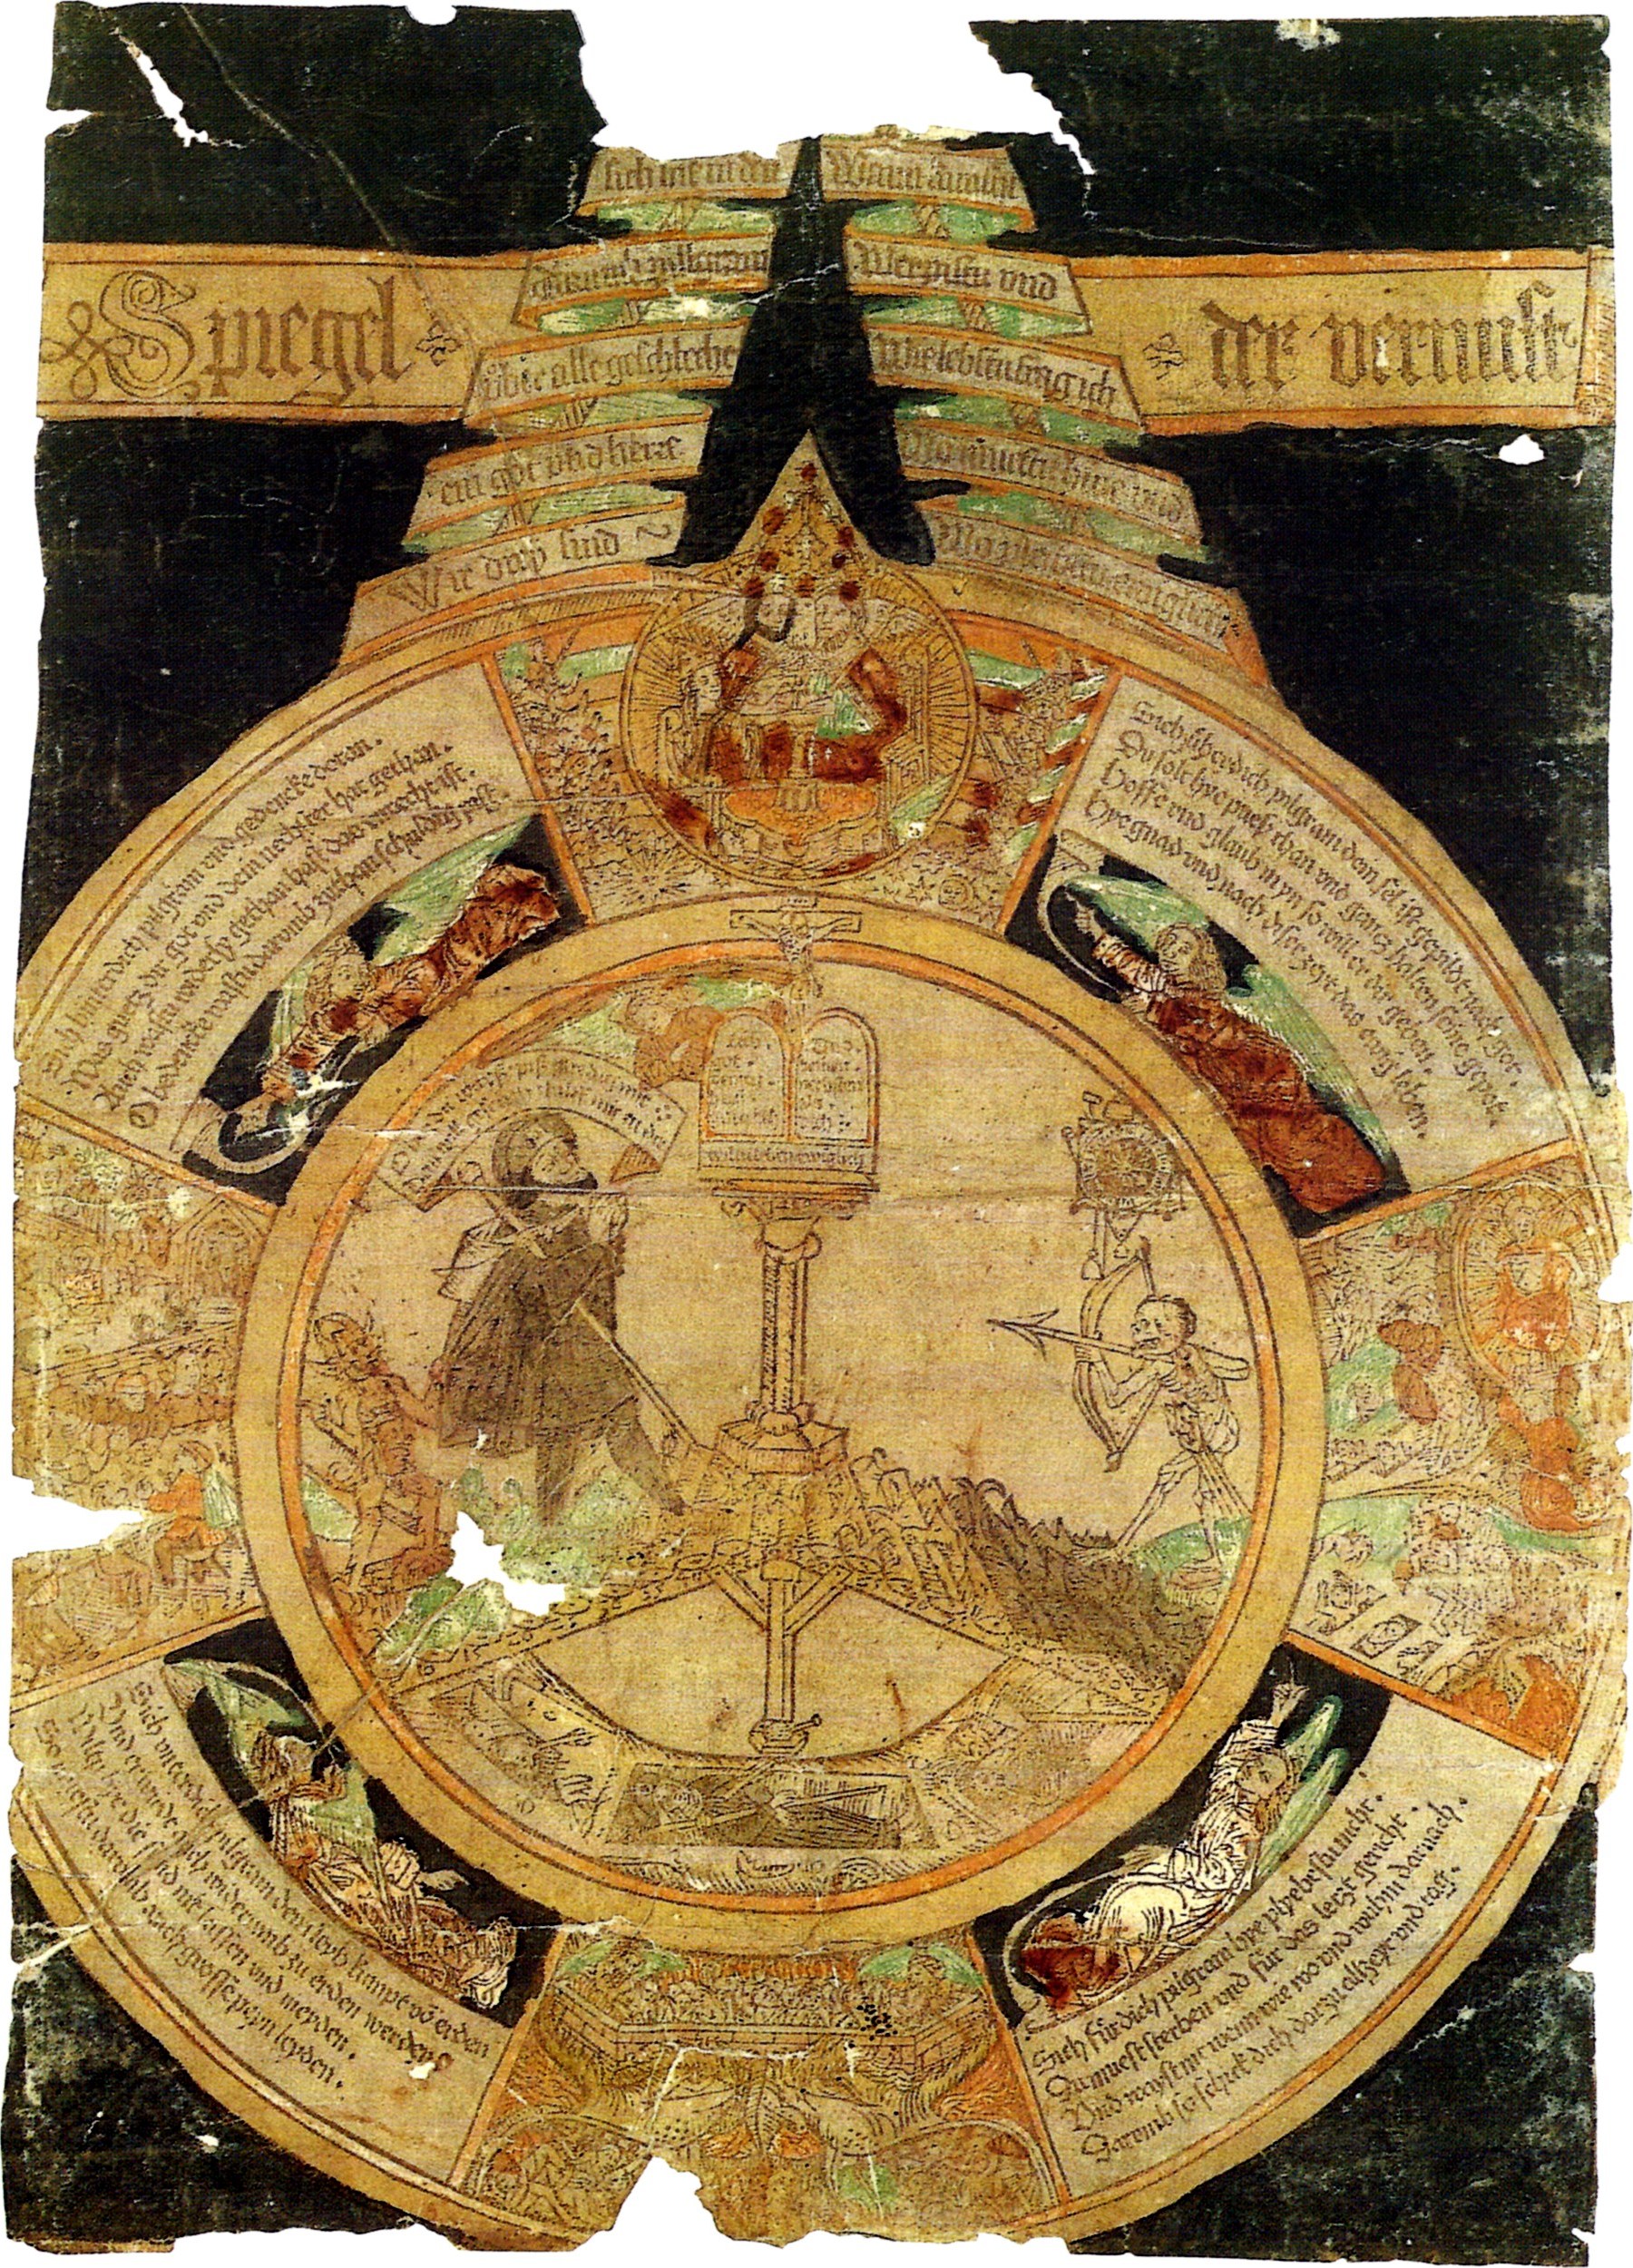 Spiegel-der-vernunft-mirror-of-understanding-1488 staatliche graphische sammlung Munich schema 2